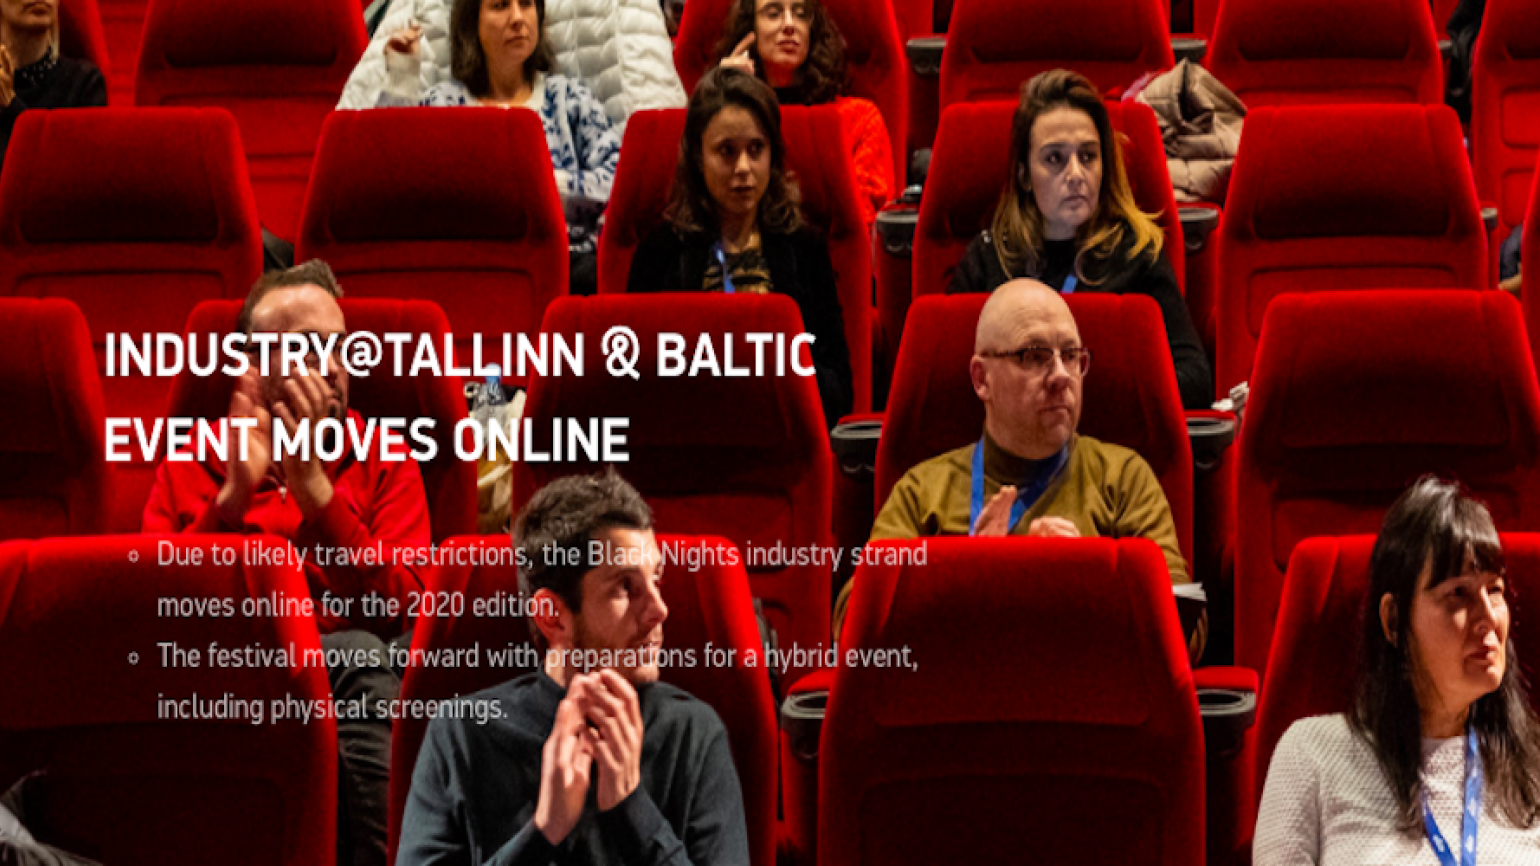 Aperta la call per partecipare al Co-Production Meeting Italia/Paesi Baltici online - deadline 16 ottobre 2020